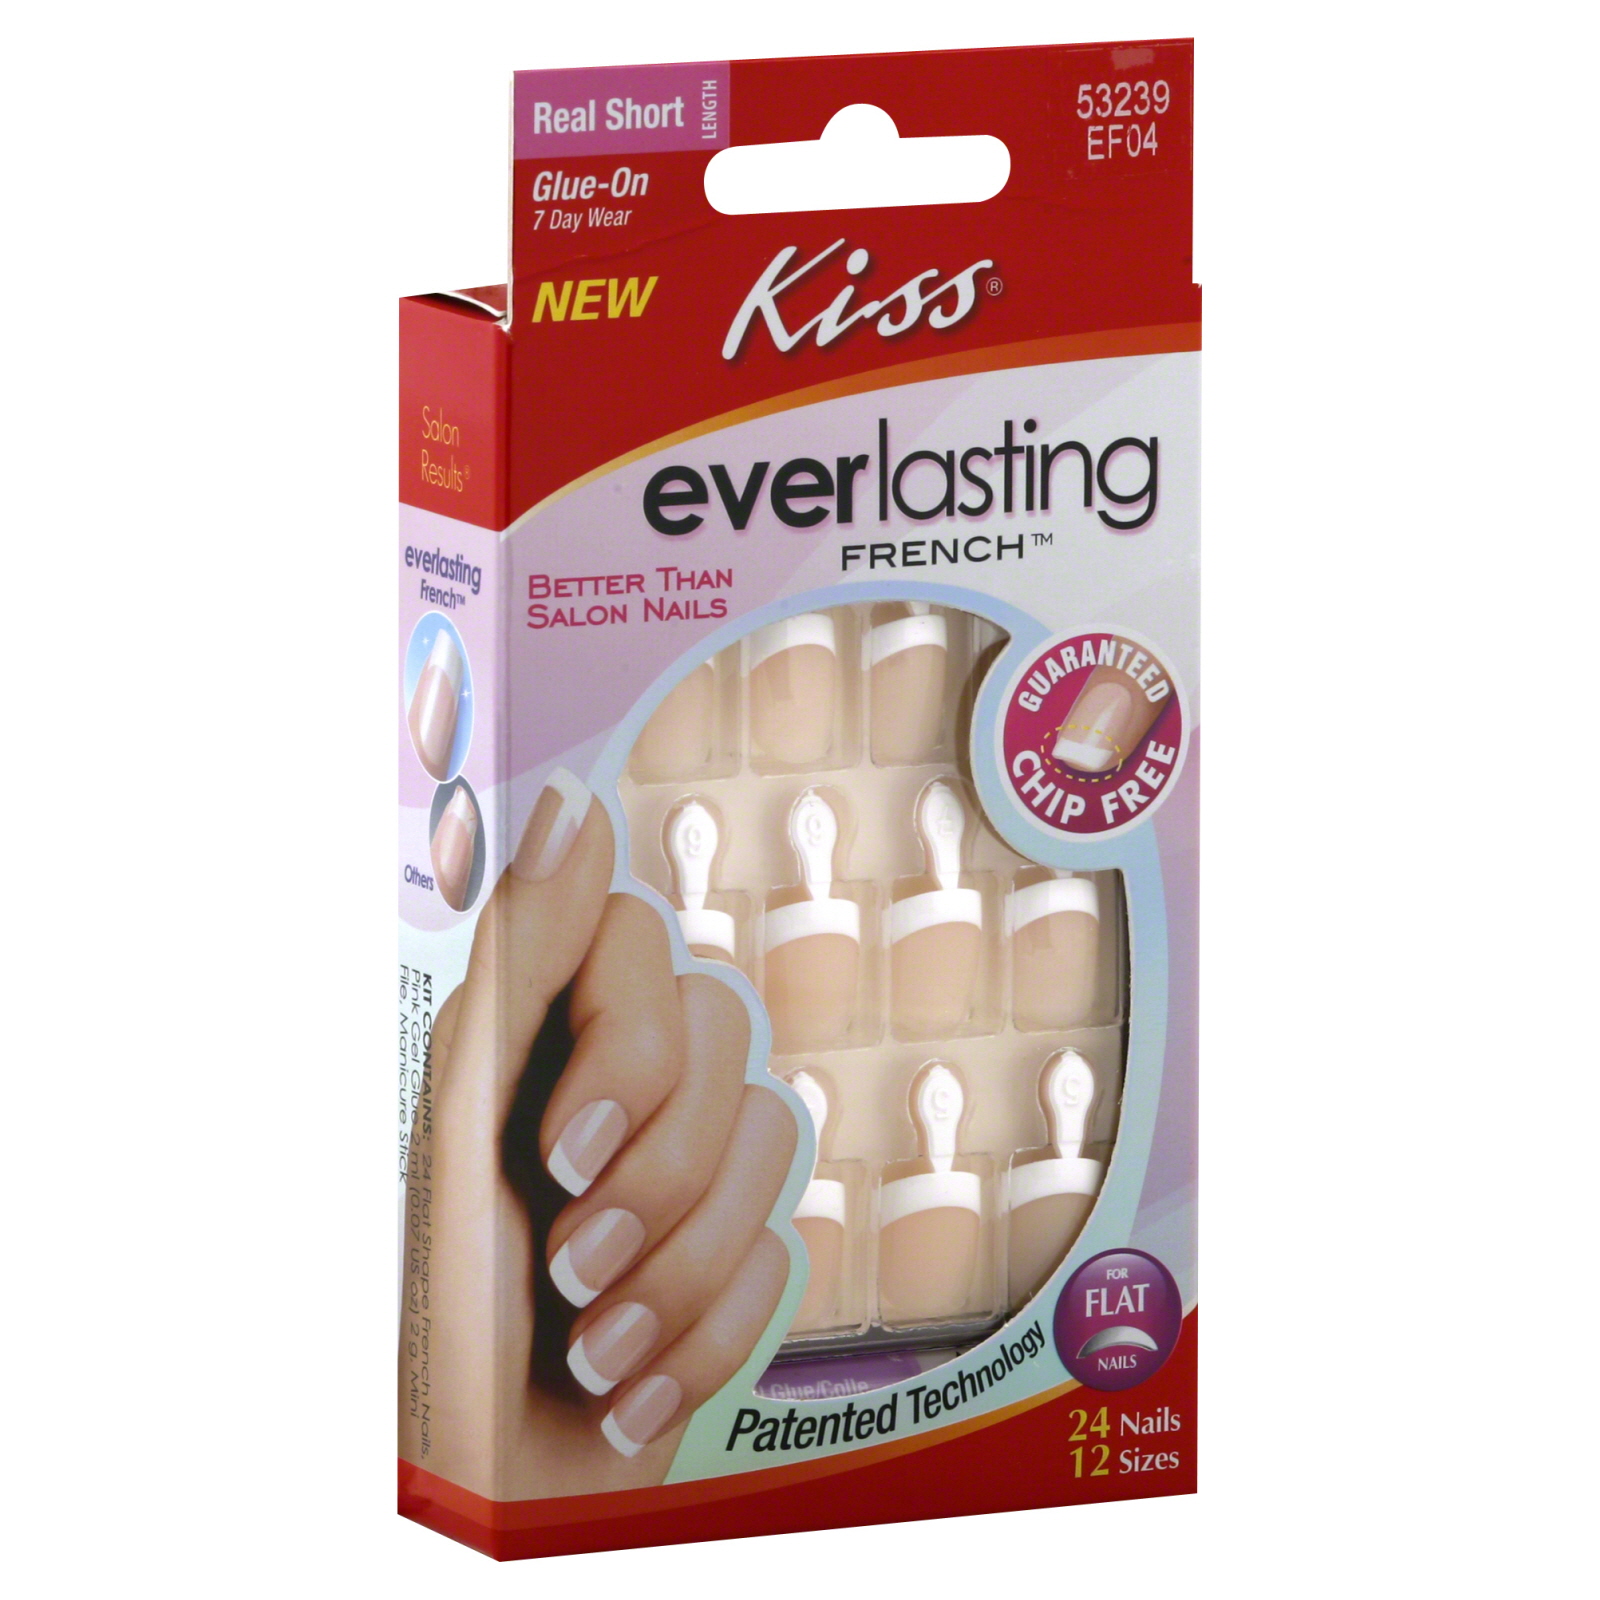 Kiss Everlasting French Nail Kit, Real Short Length, Eternal, 1 kit